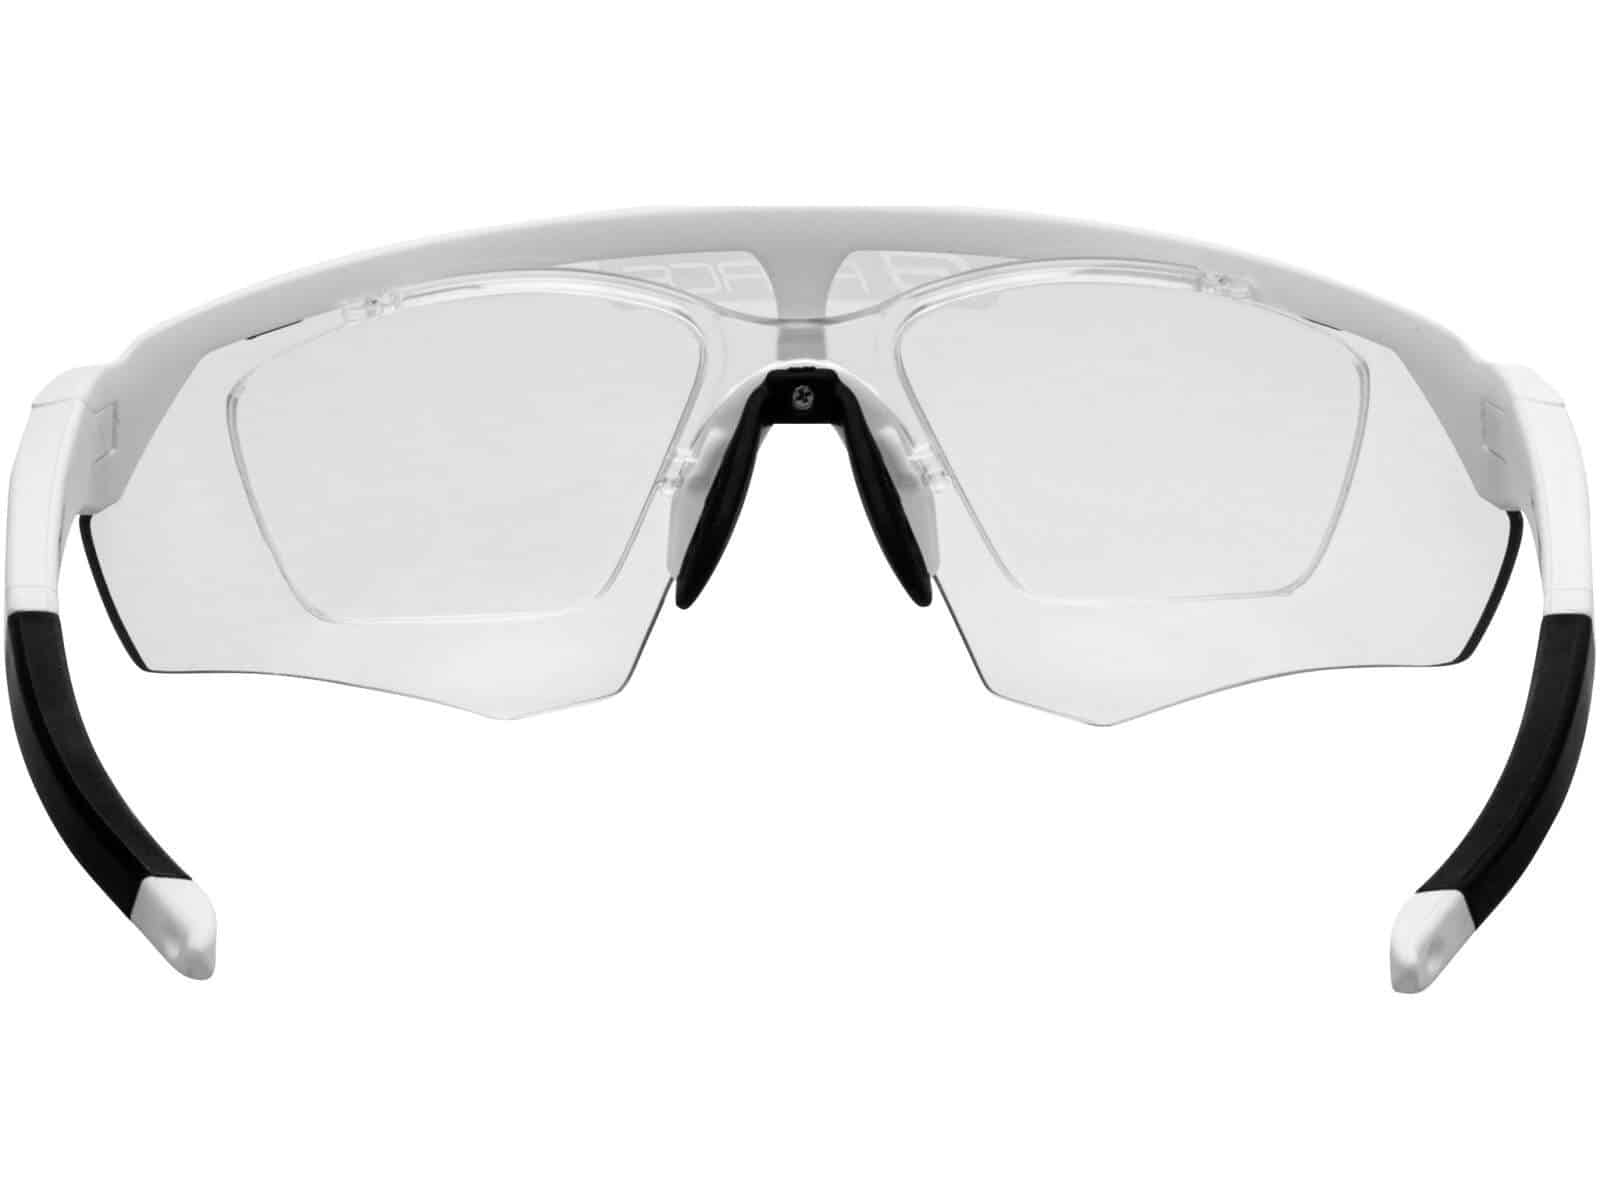 Okulary rowerowe FORCE ENIGMA szkła fotochromowe